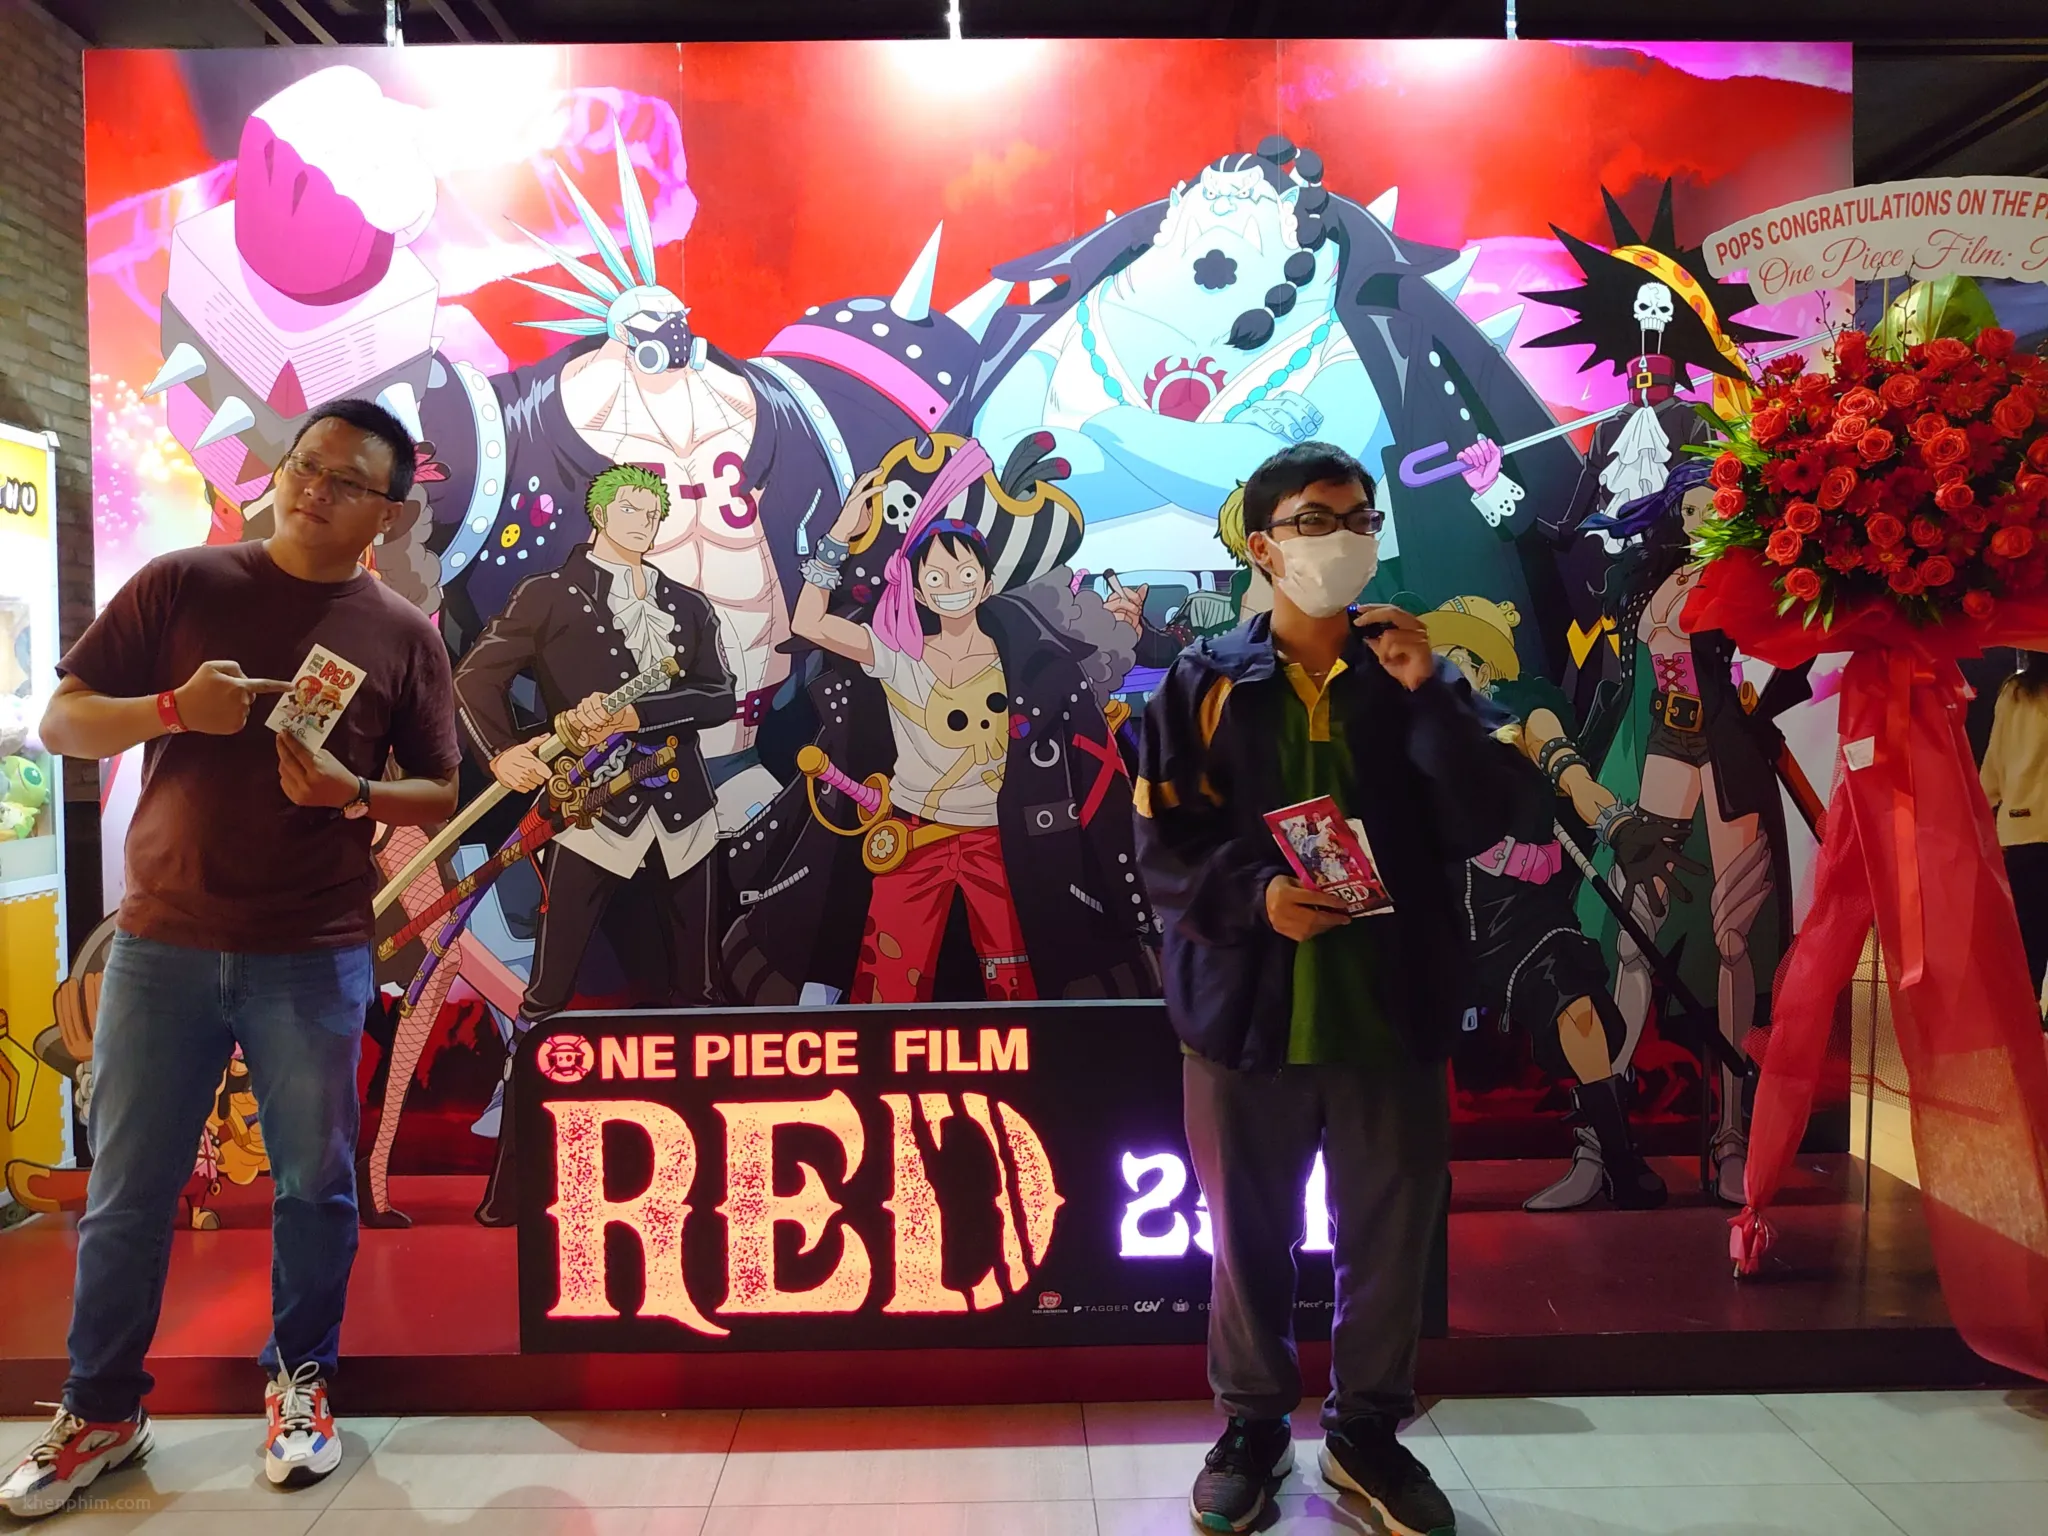 Hình ảnh tại buổi họp báo phim One Piece Film Red